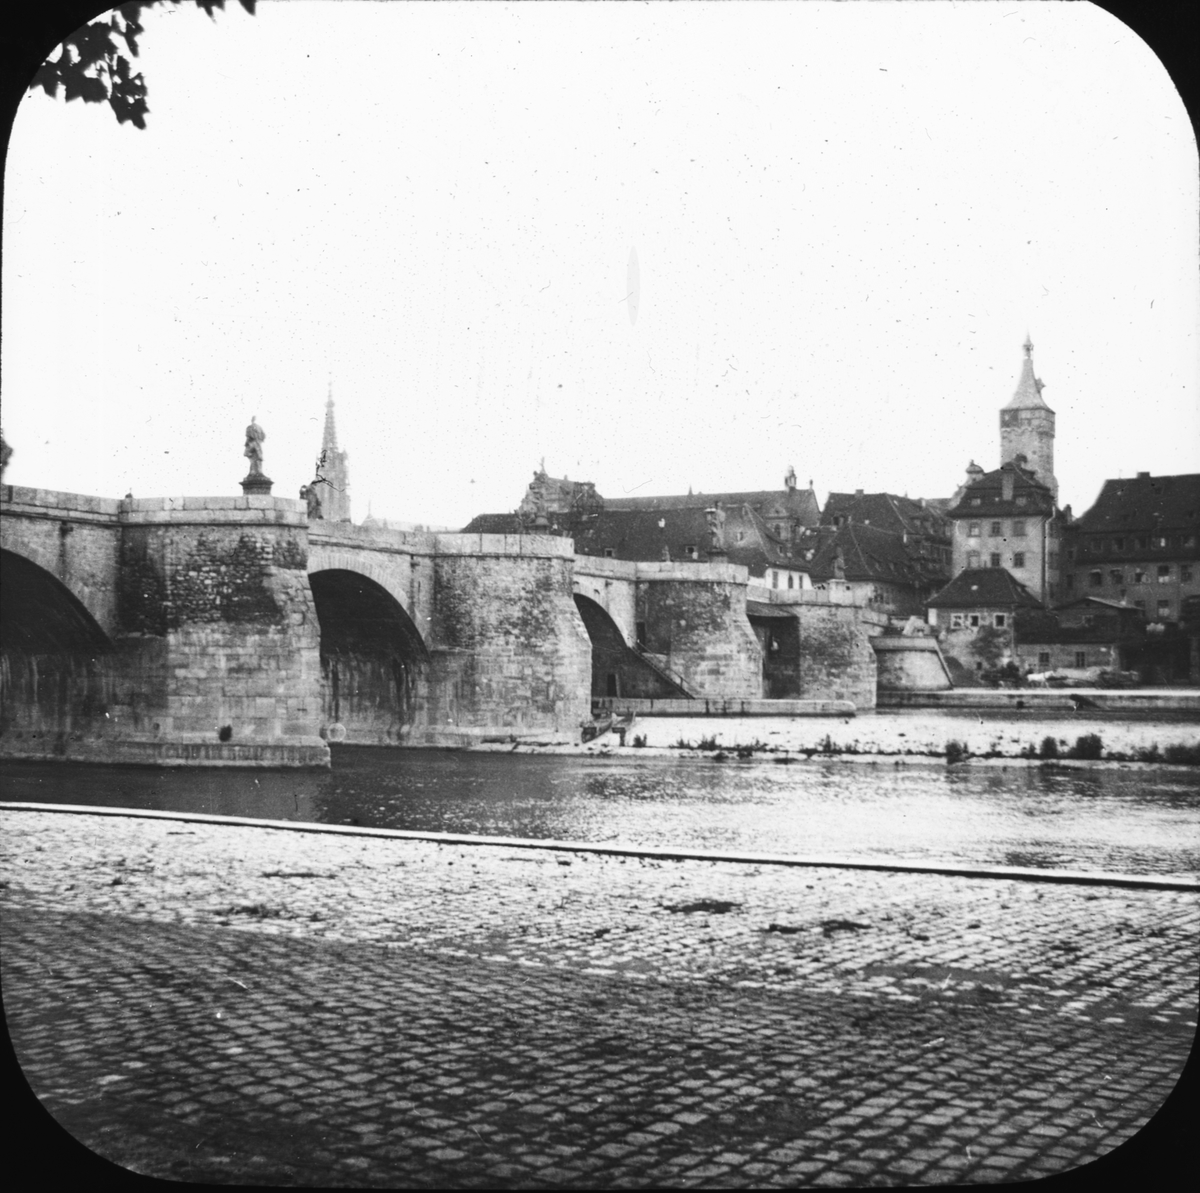 Skioptikonbild med motiv av bron över floden Main som leder till Würzburg.
Bilden har förvarats i kartong märkt: ?